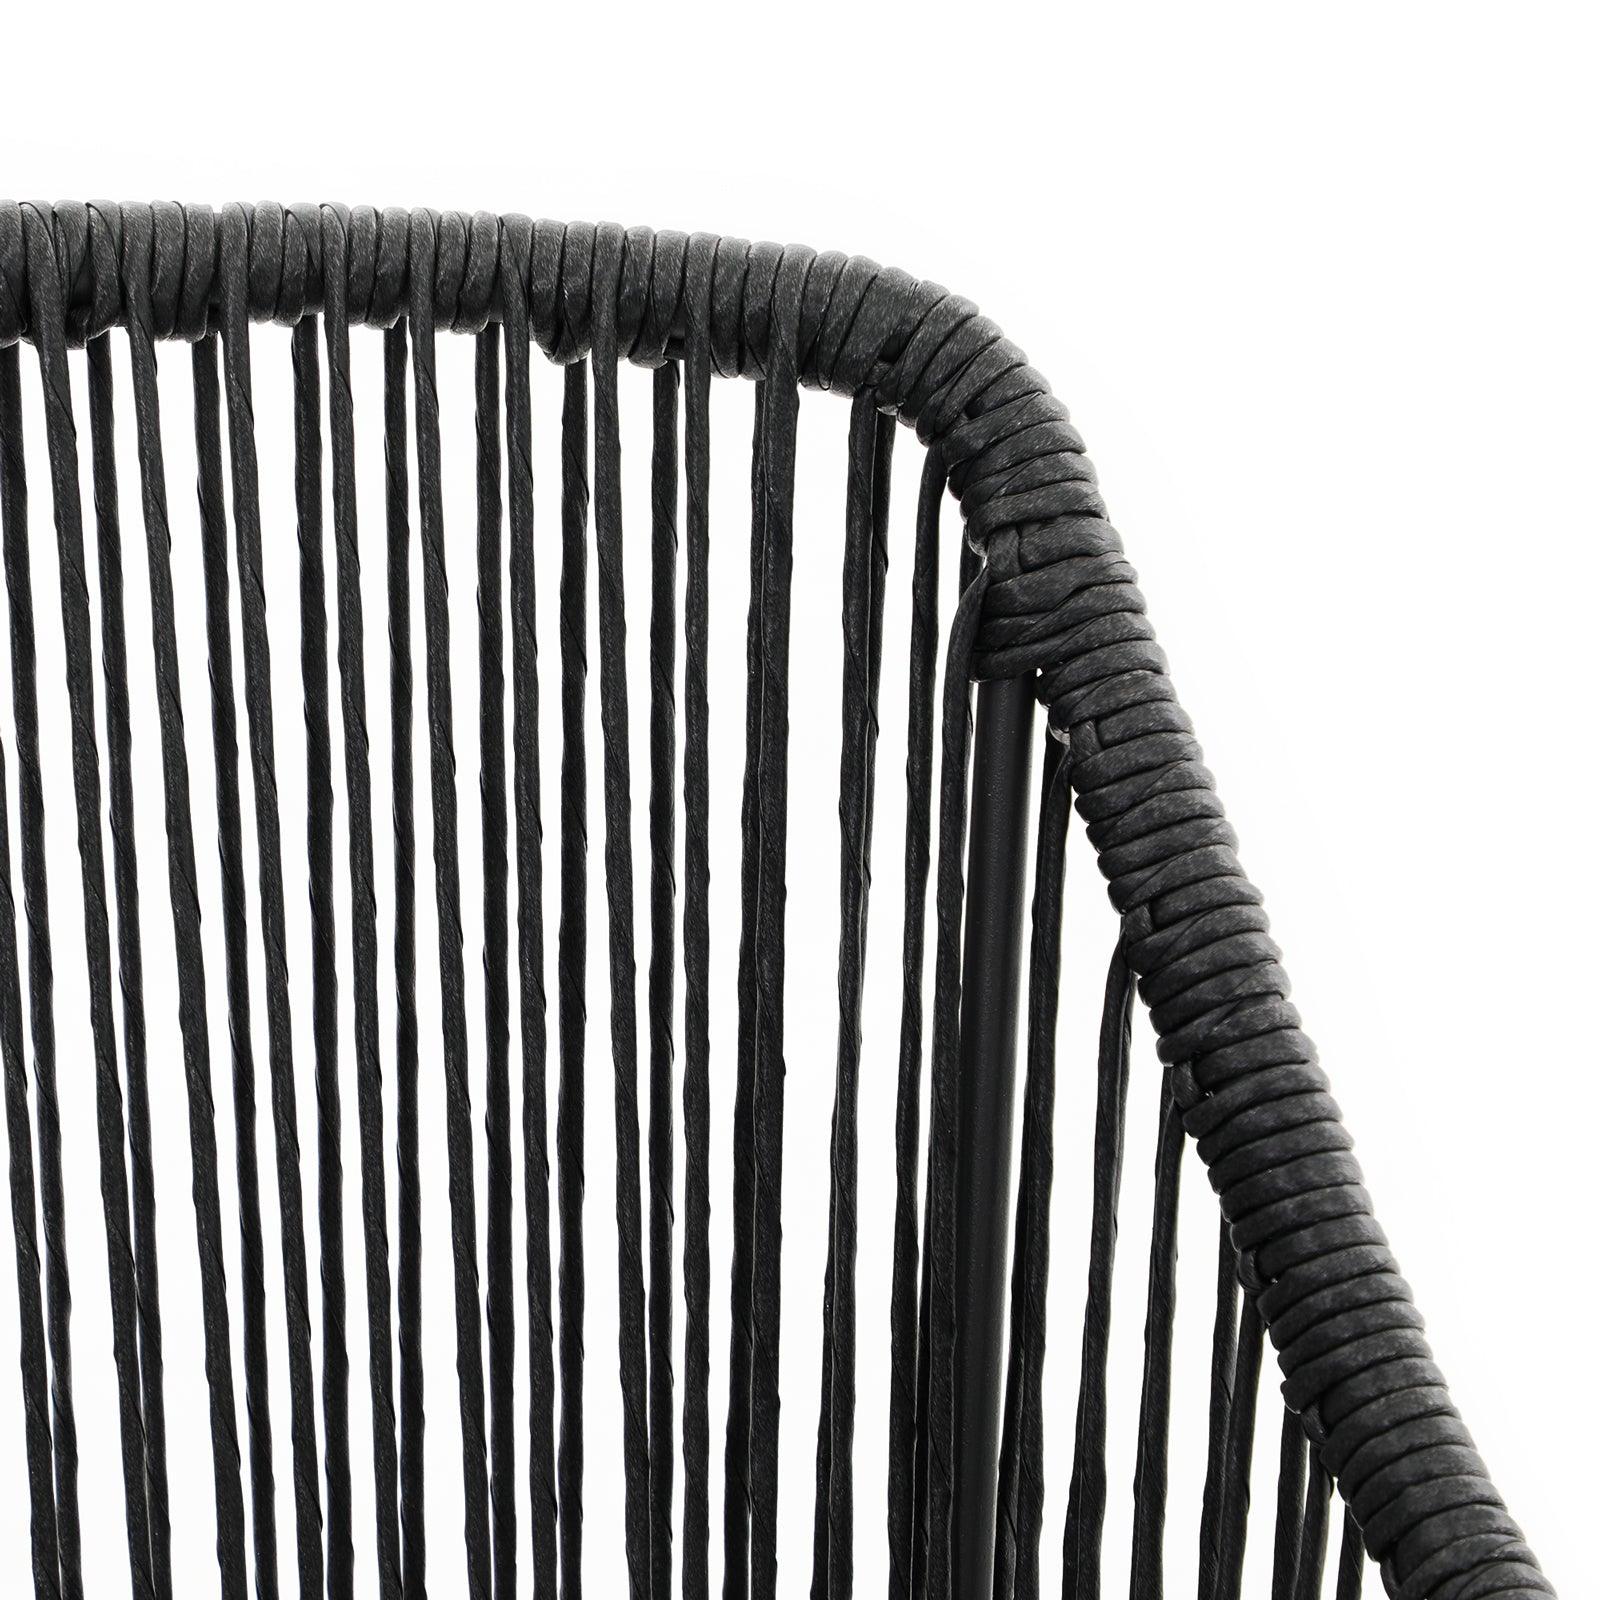 Hallerbos rattan Dining Chair with steel frame, black rattan backrest details- Jardina Furniture#Color_Black